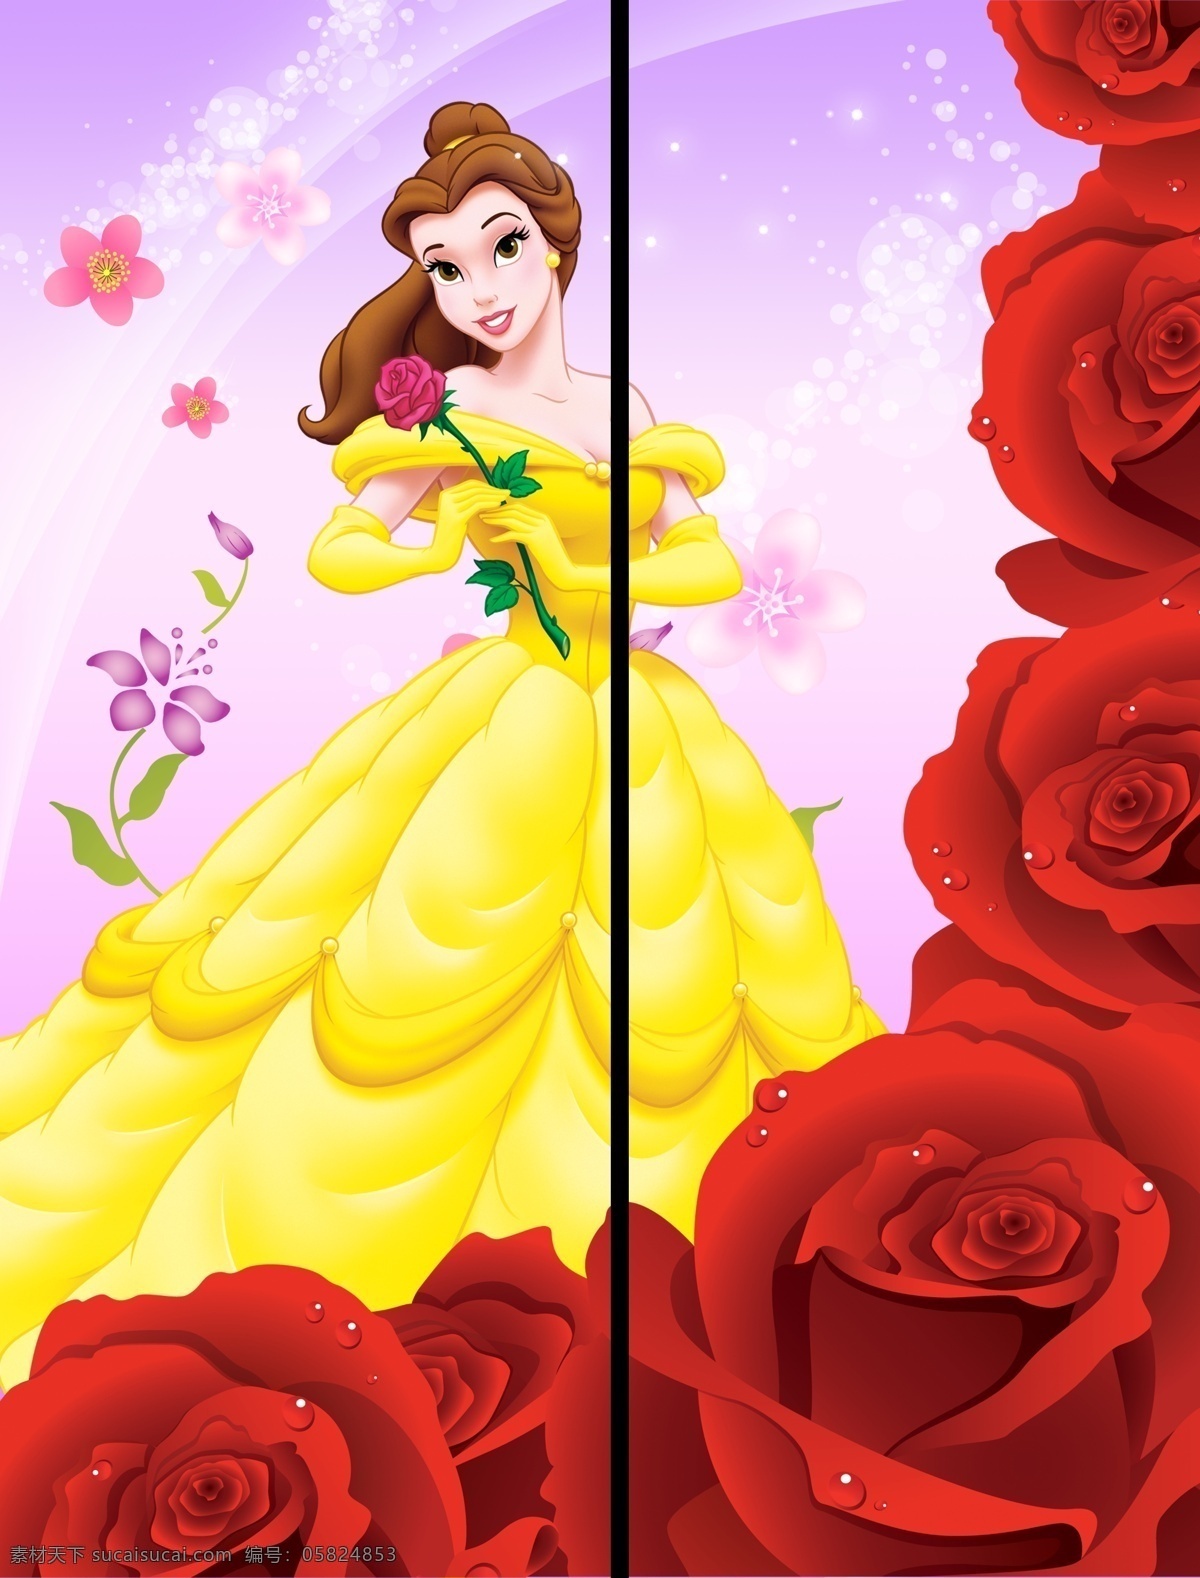 移门 玫瑰 公主 背景 广告设计模板 花边 花朵 梦幻 移门玫瑰公主 移门图案 源文件 家居装饰素材